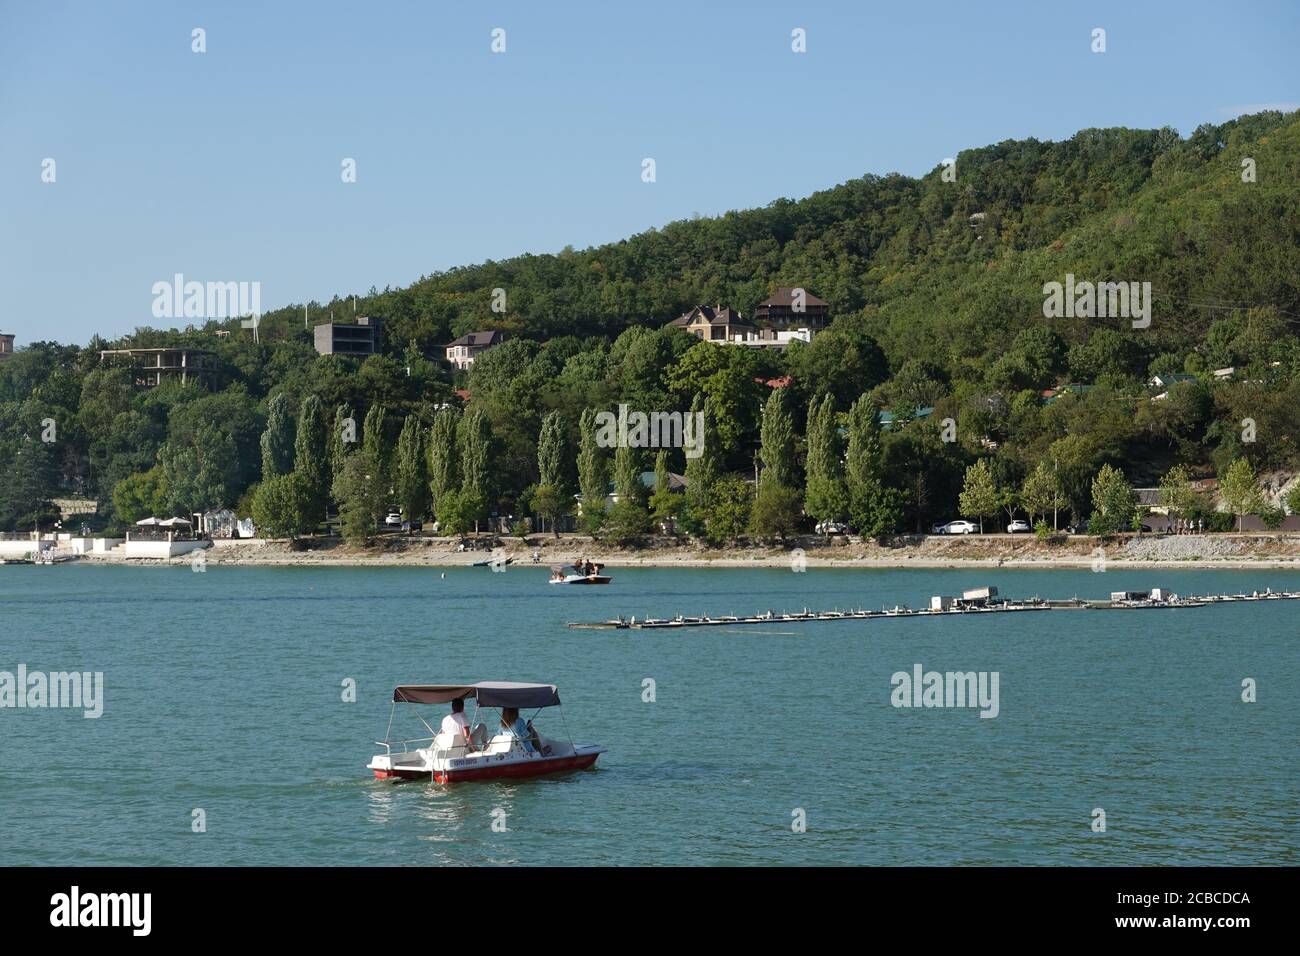 Lake Abrau, Abrau-Durso krasnodar krai Stock Photo